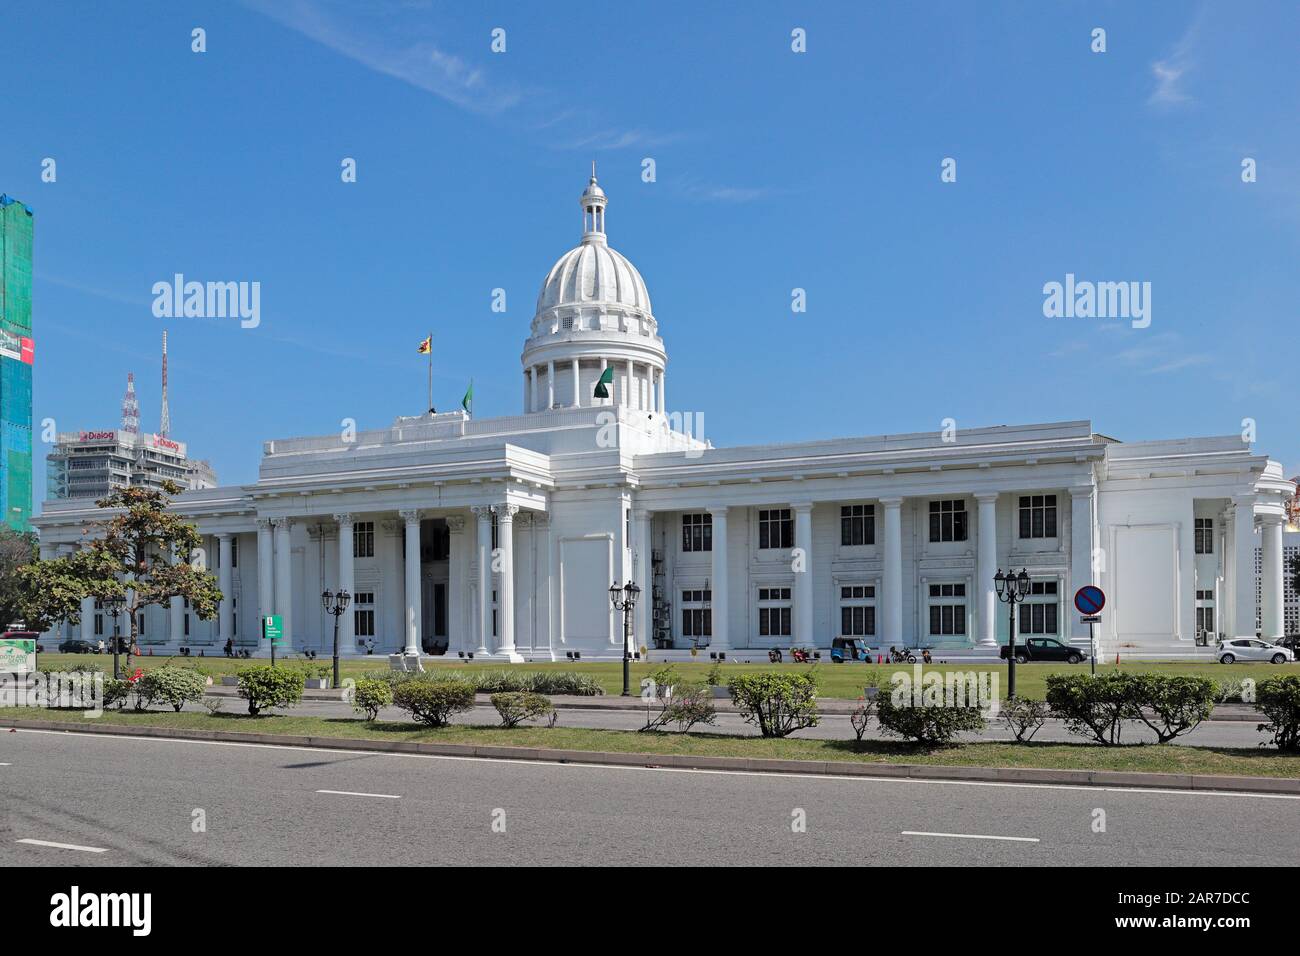 La Maison Blanche De Colombo, Sri Lanka - Hôtel De Ville Du Conseil Municipal De Colombo Banque D'Images